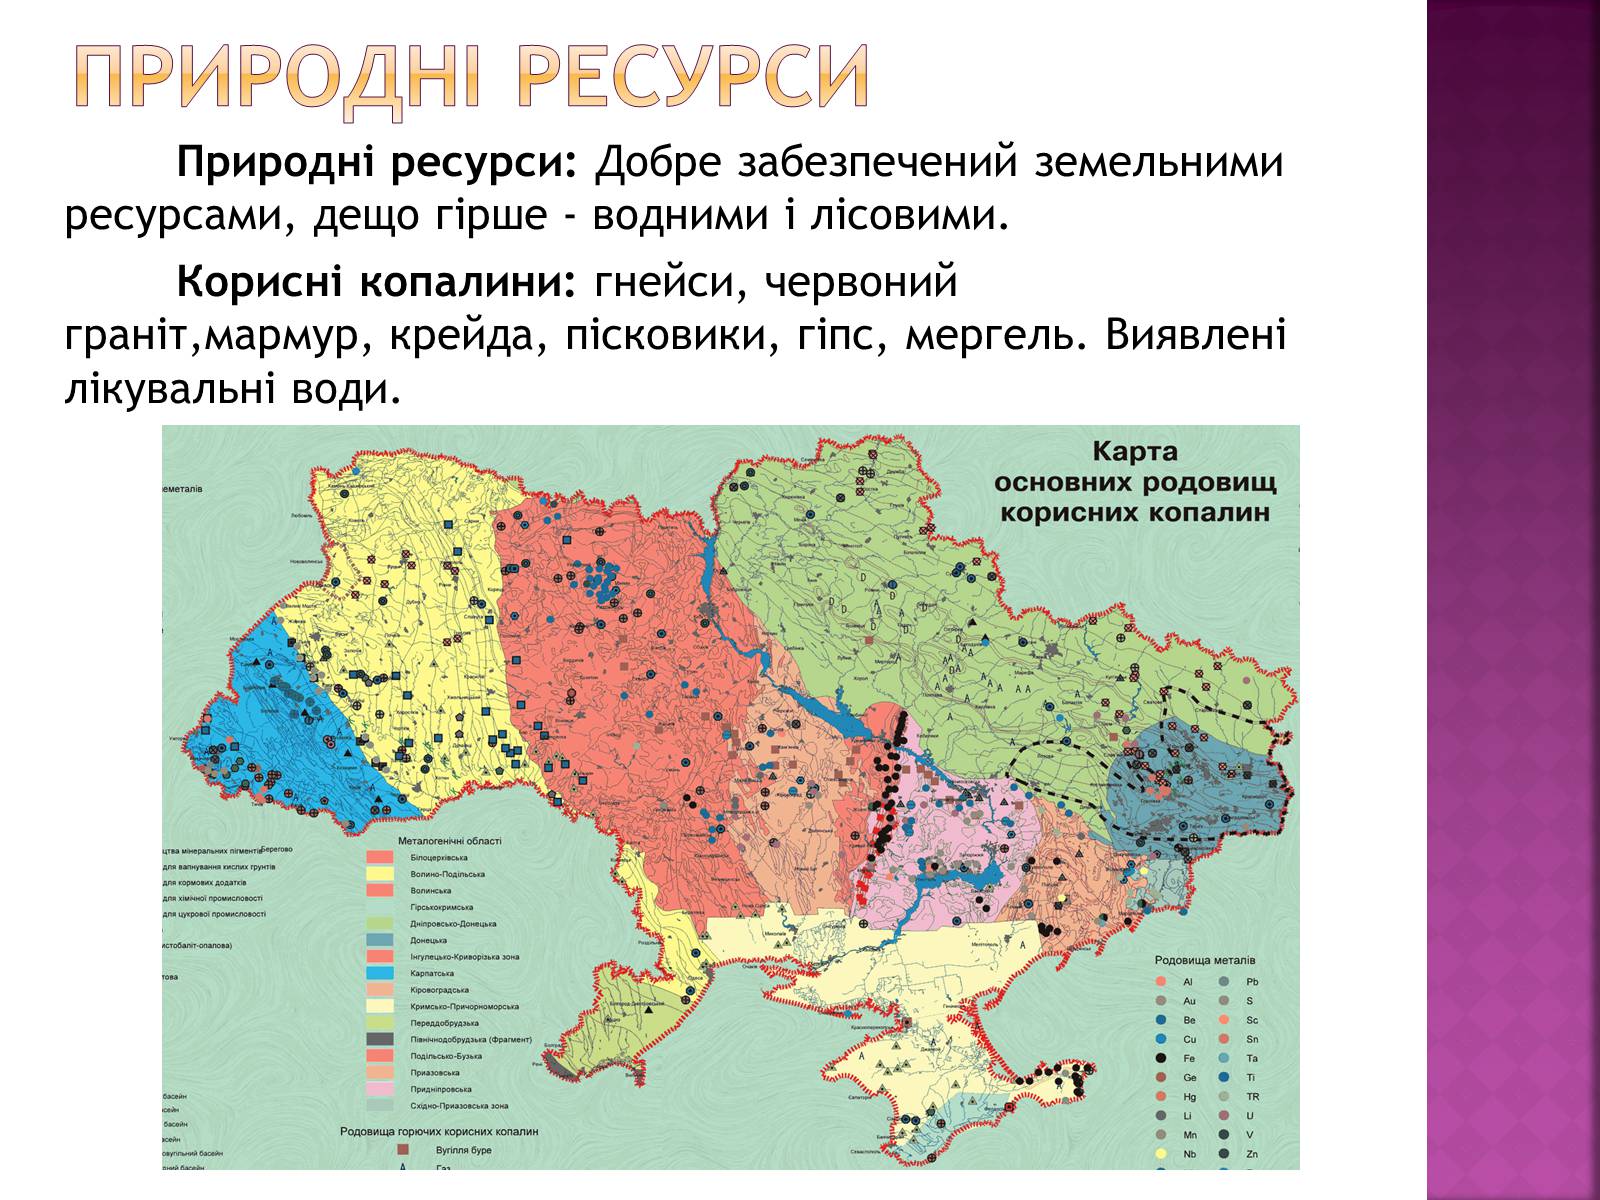 Ископаемые украины на карте. Карта природных ресурсов Украины. Ресурсы Украины на карте. Карта полезных ископаемых Украины. Карта природных ископаемых Украины.